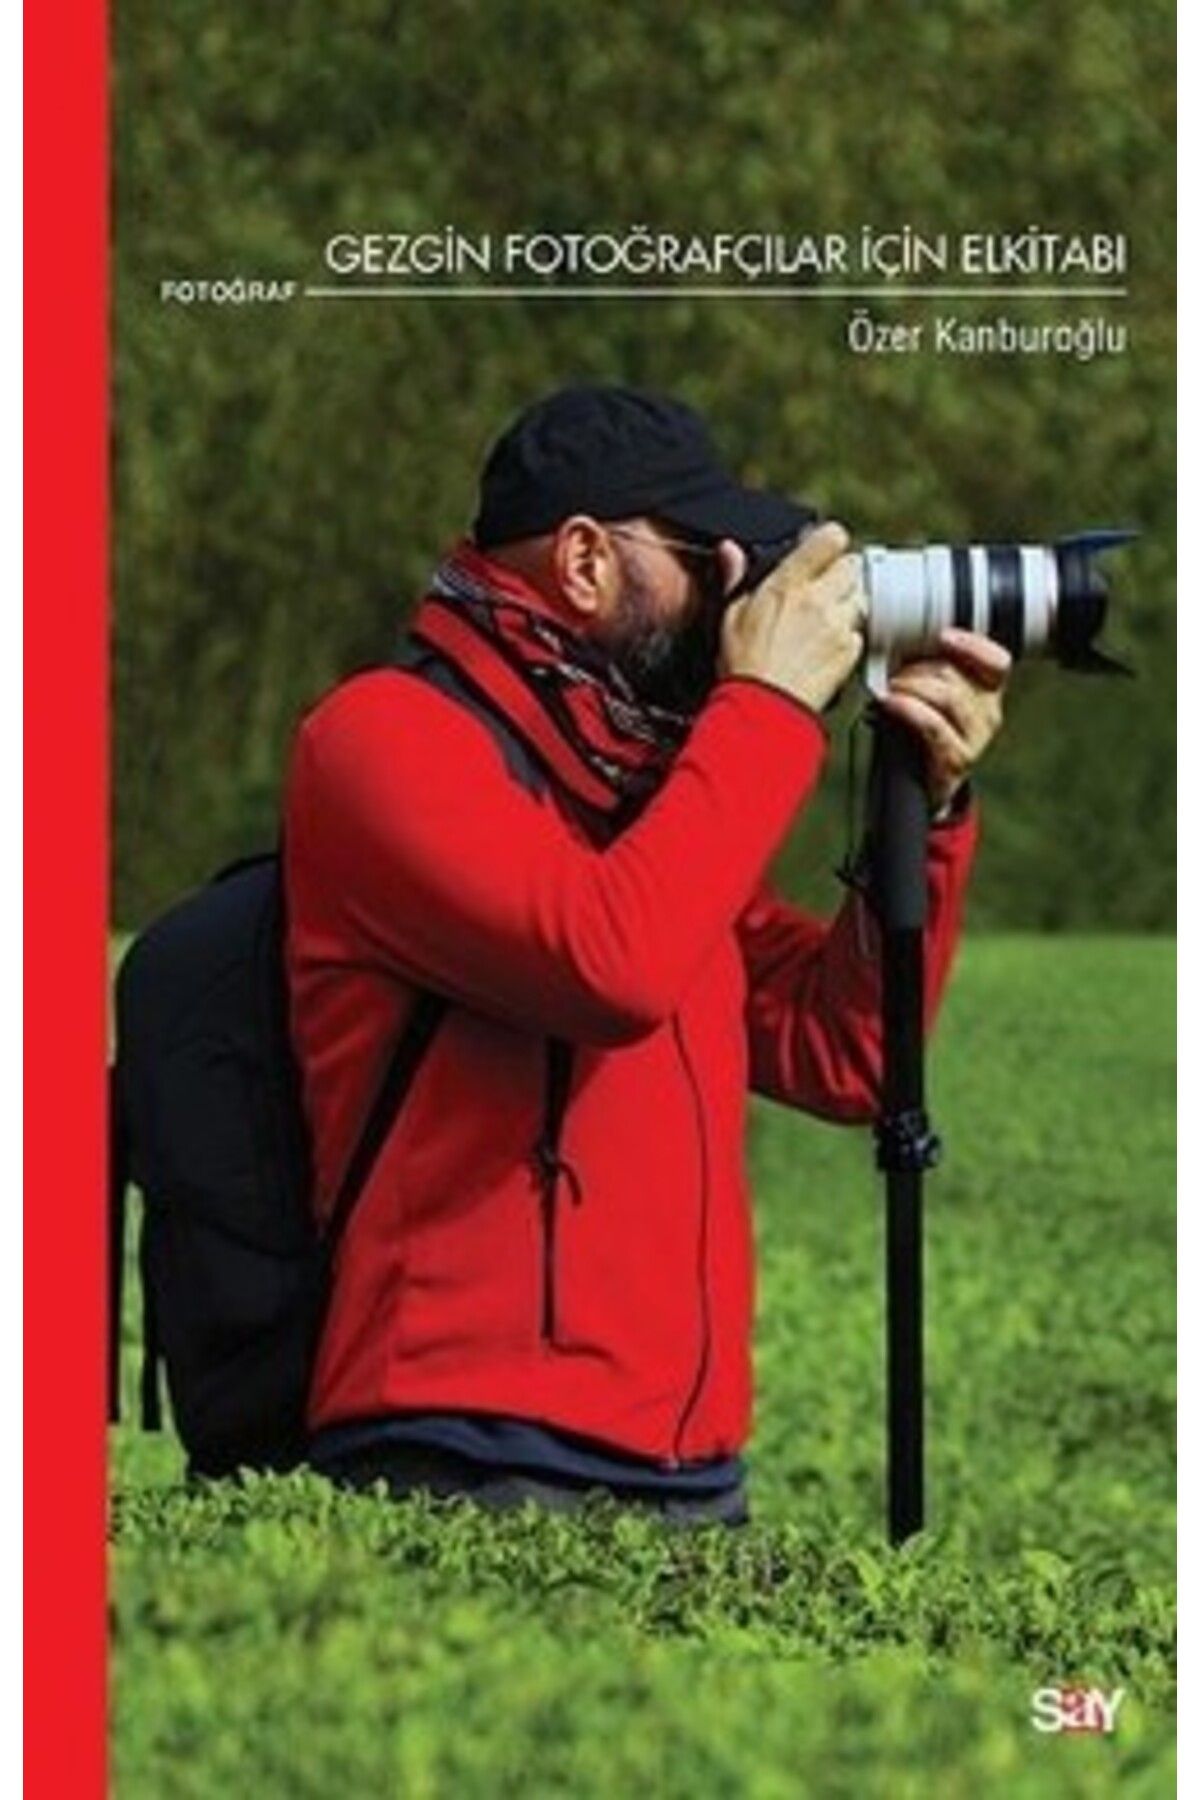 Say Yayınları Gezgin Fotoğraçılar İçin Elkitabı kitabı - Ozan Kanburoğlu - Say Yayınları